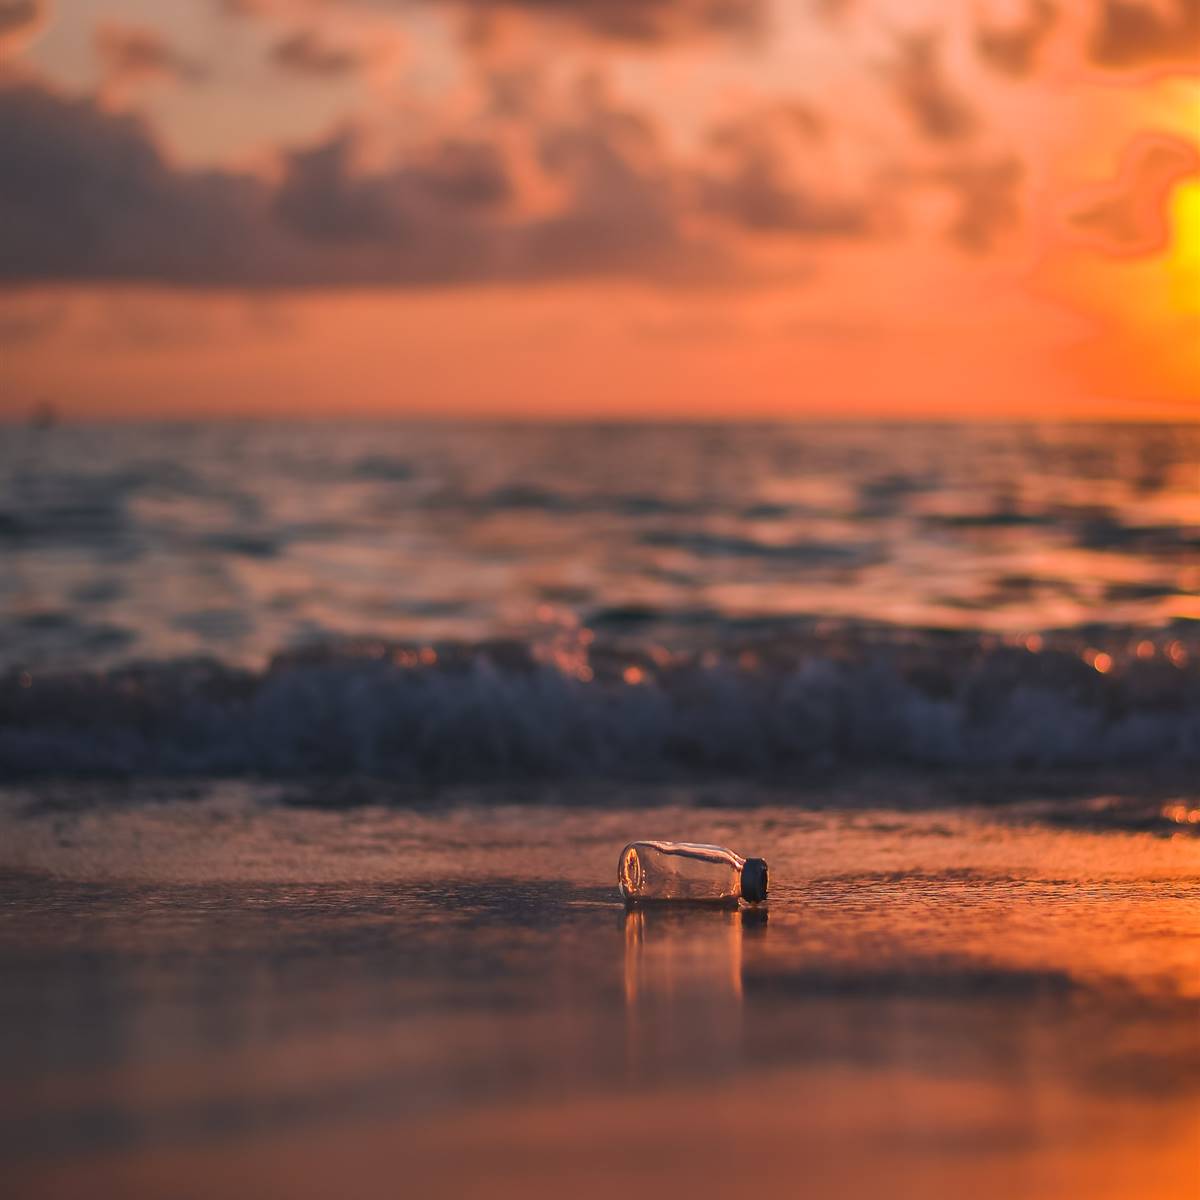 Botella de plastico en la orilla de una playa al atardecer